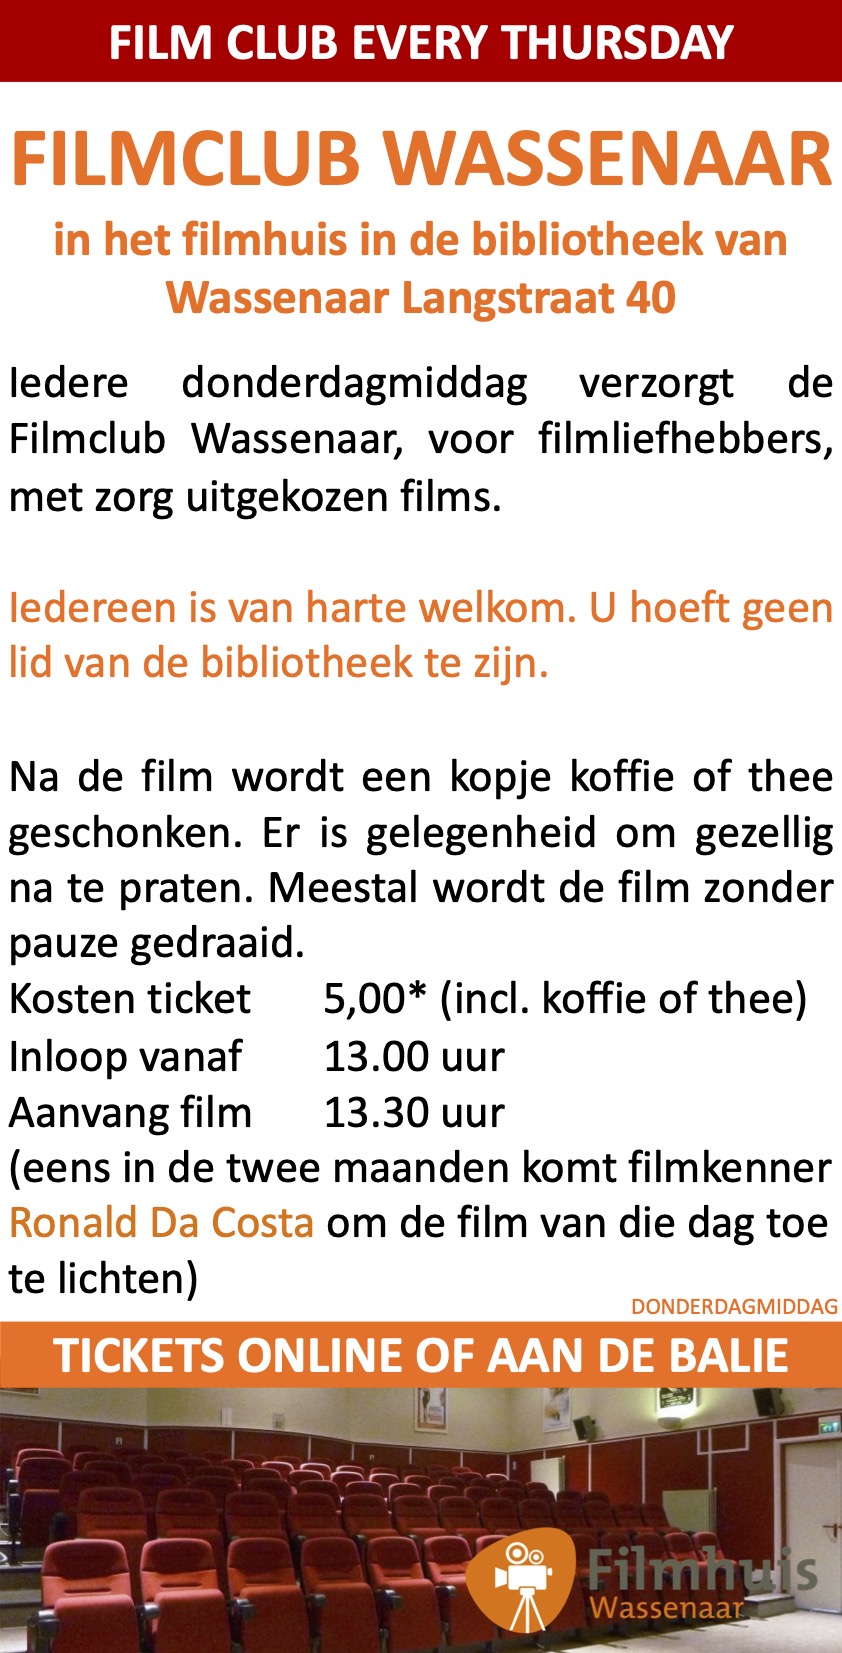 Filmclub Wassenaar Filmhuis Bibliotheek Wassenaar